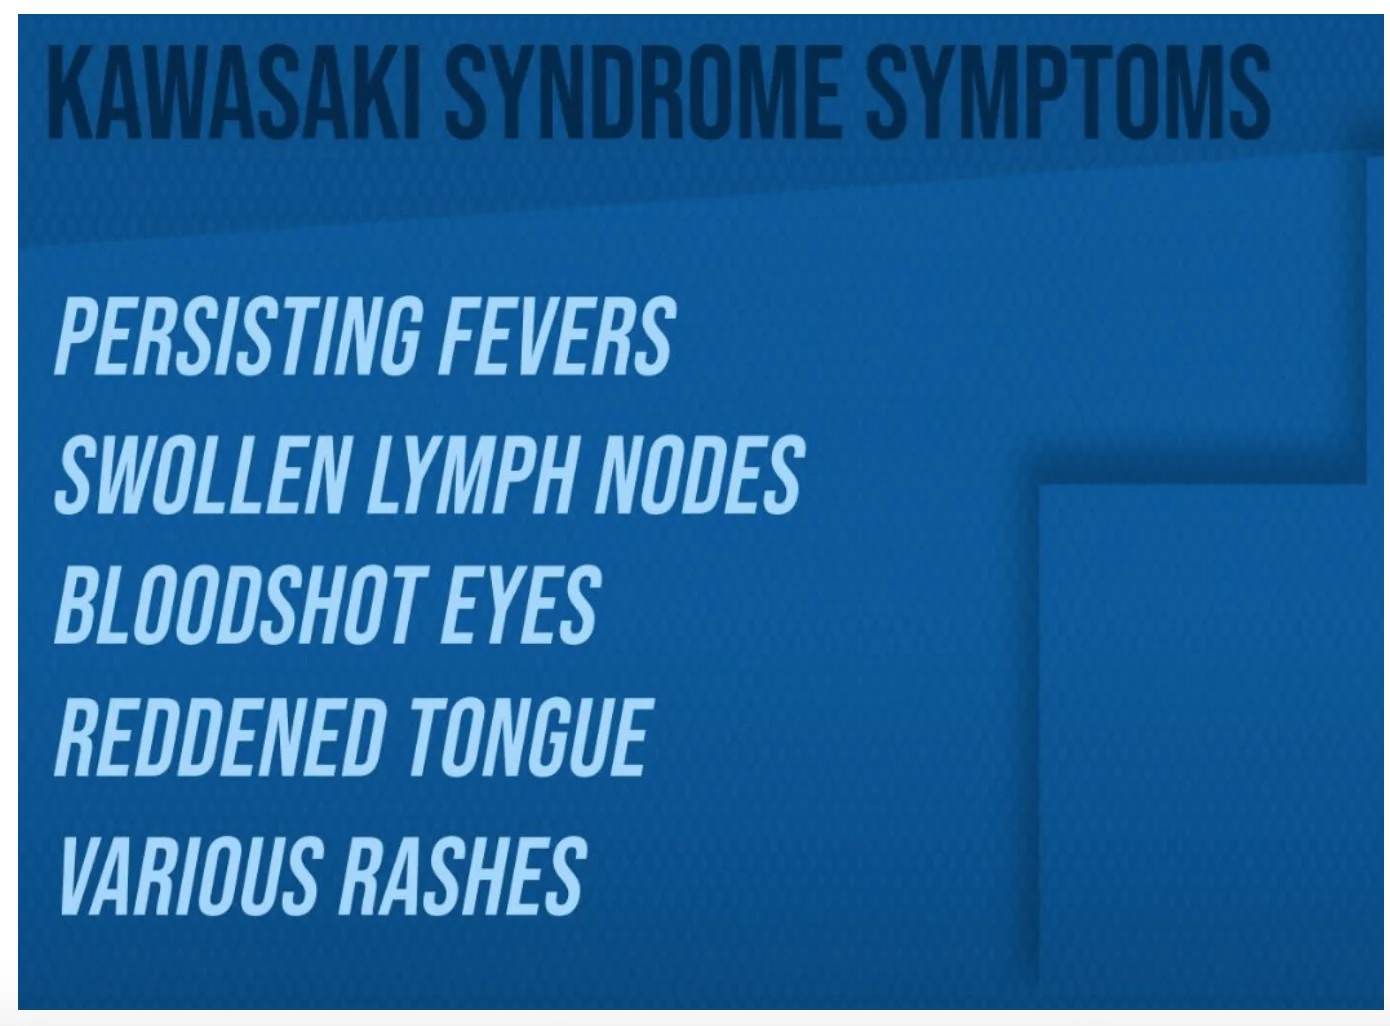 Kawasaki Syndrome